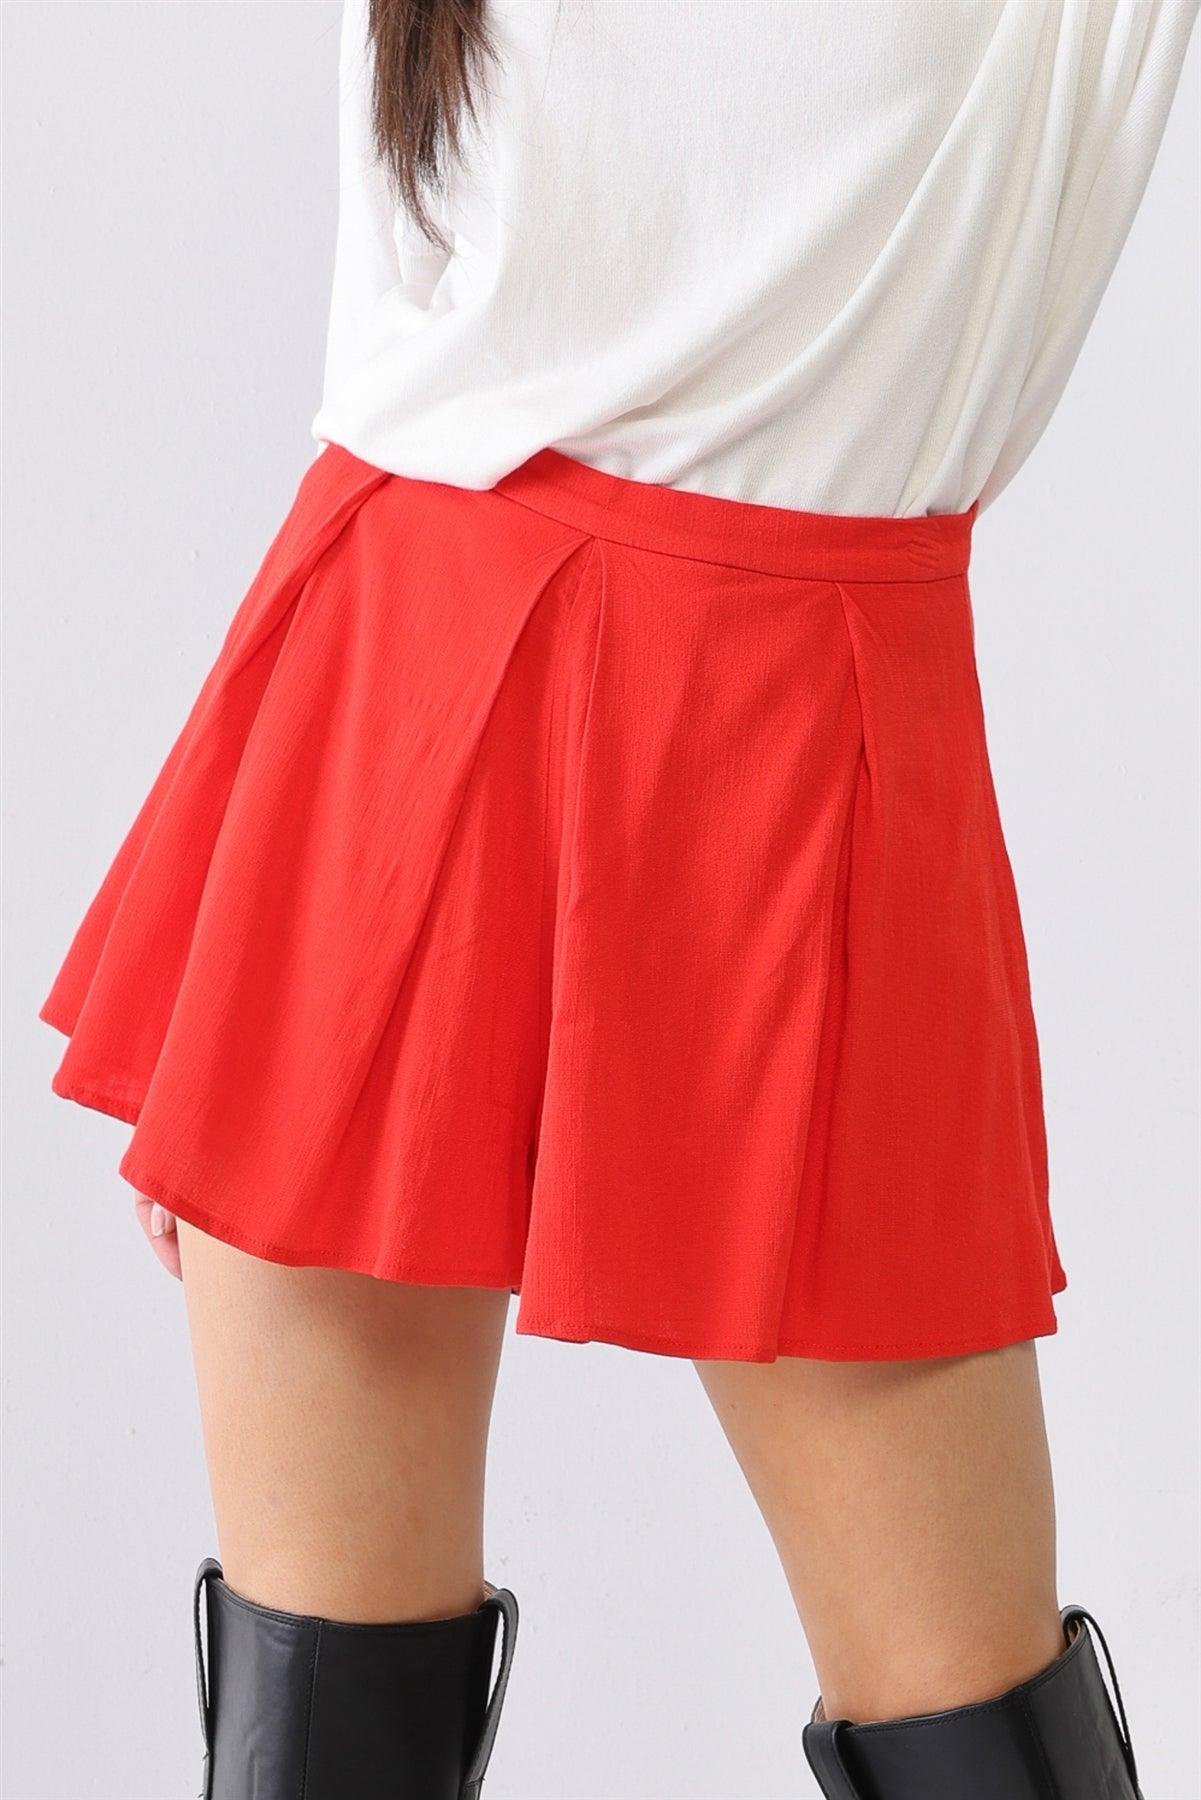 Red High Waist Pleated Shorts Skort /3-2-1